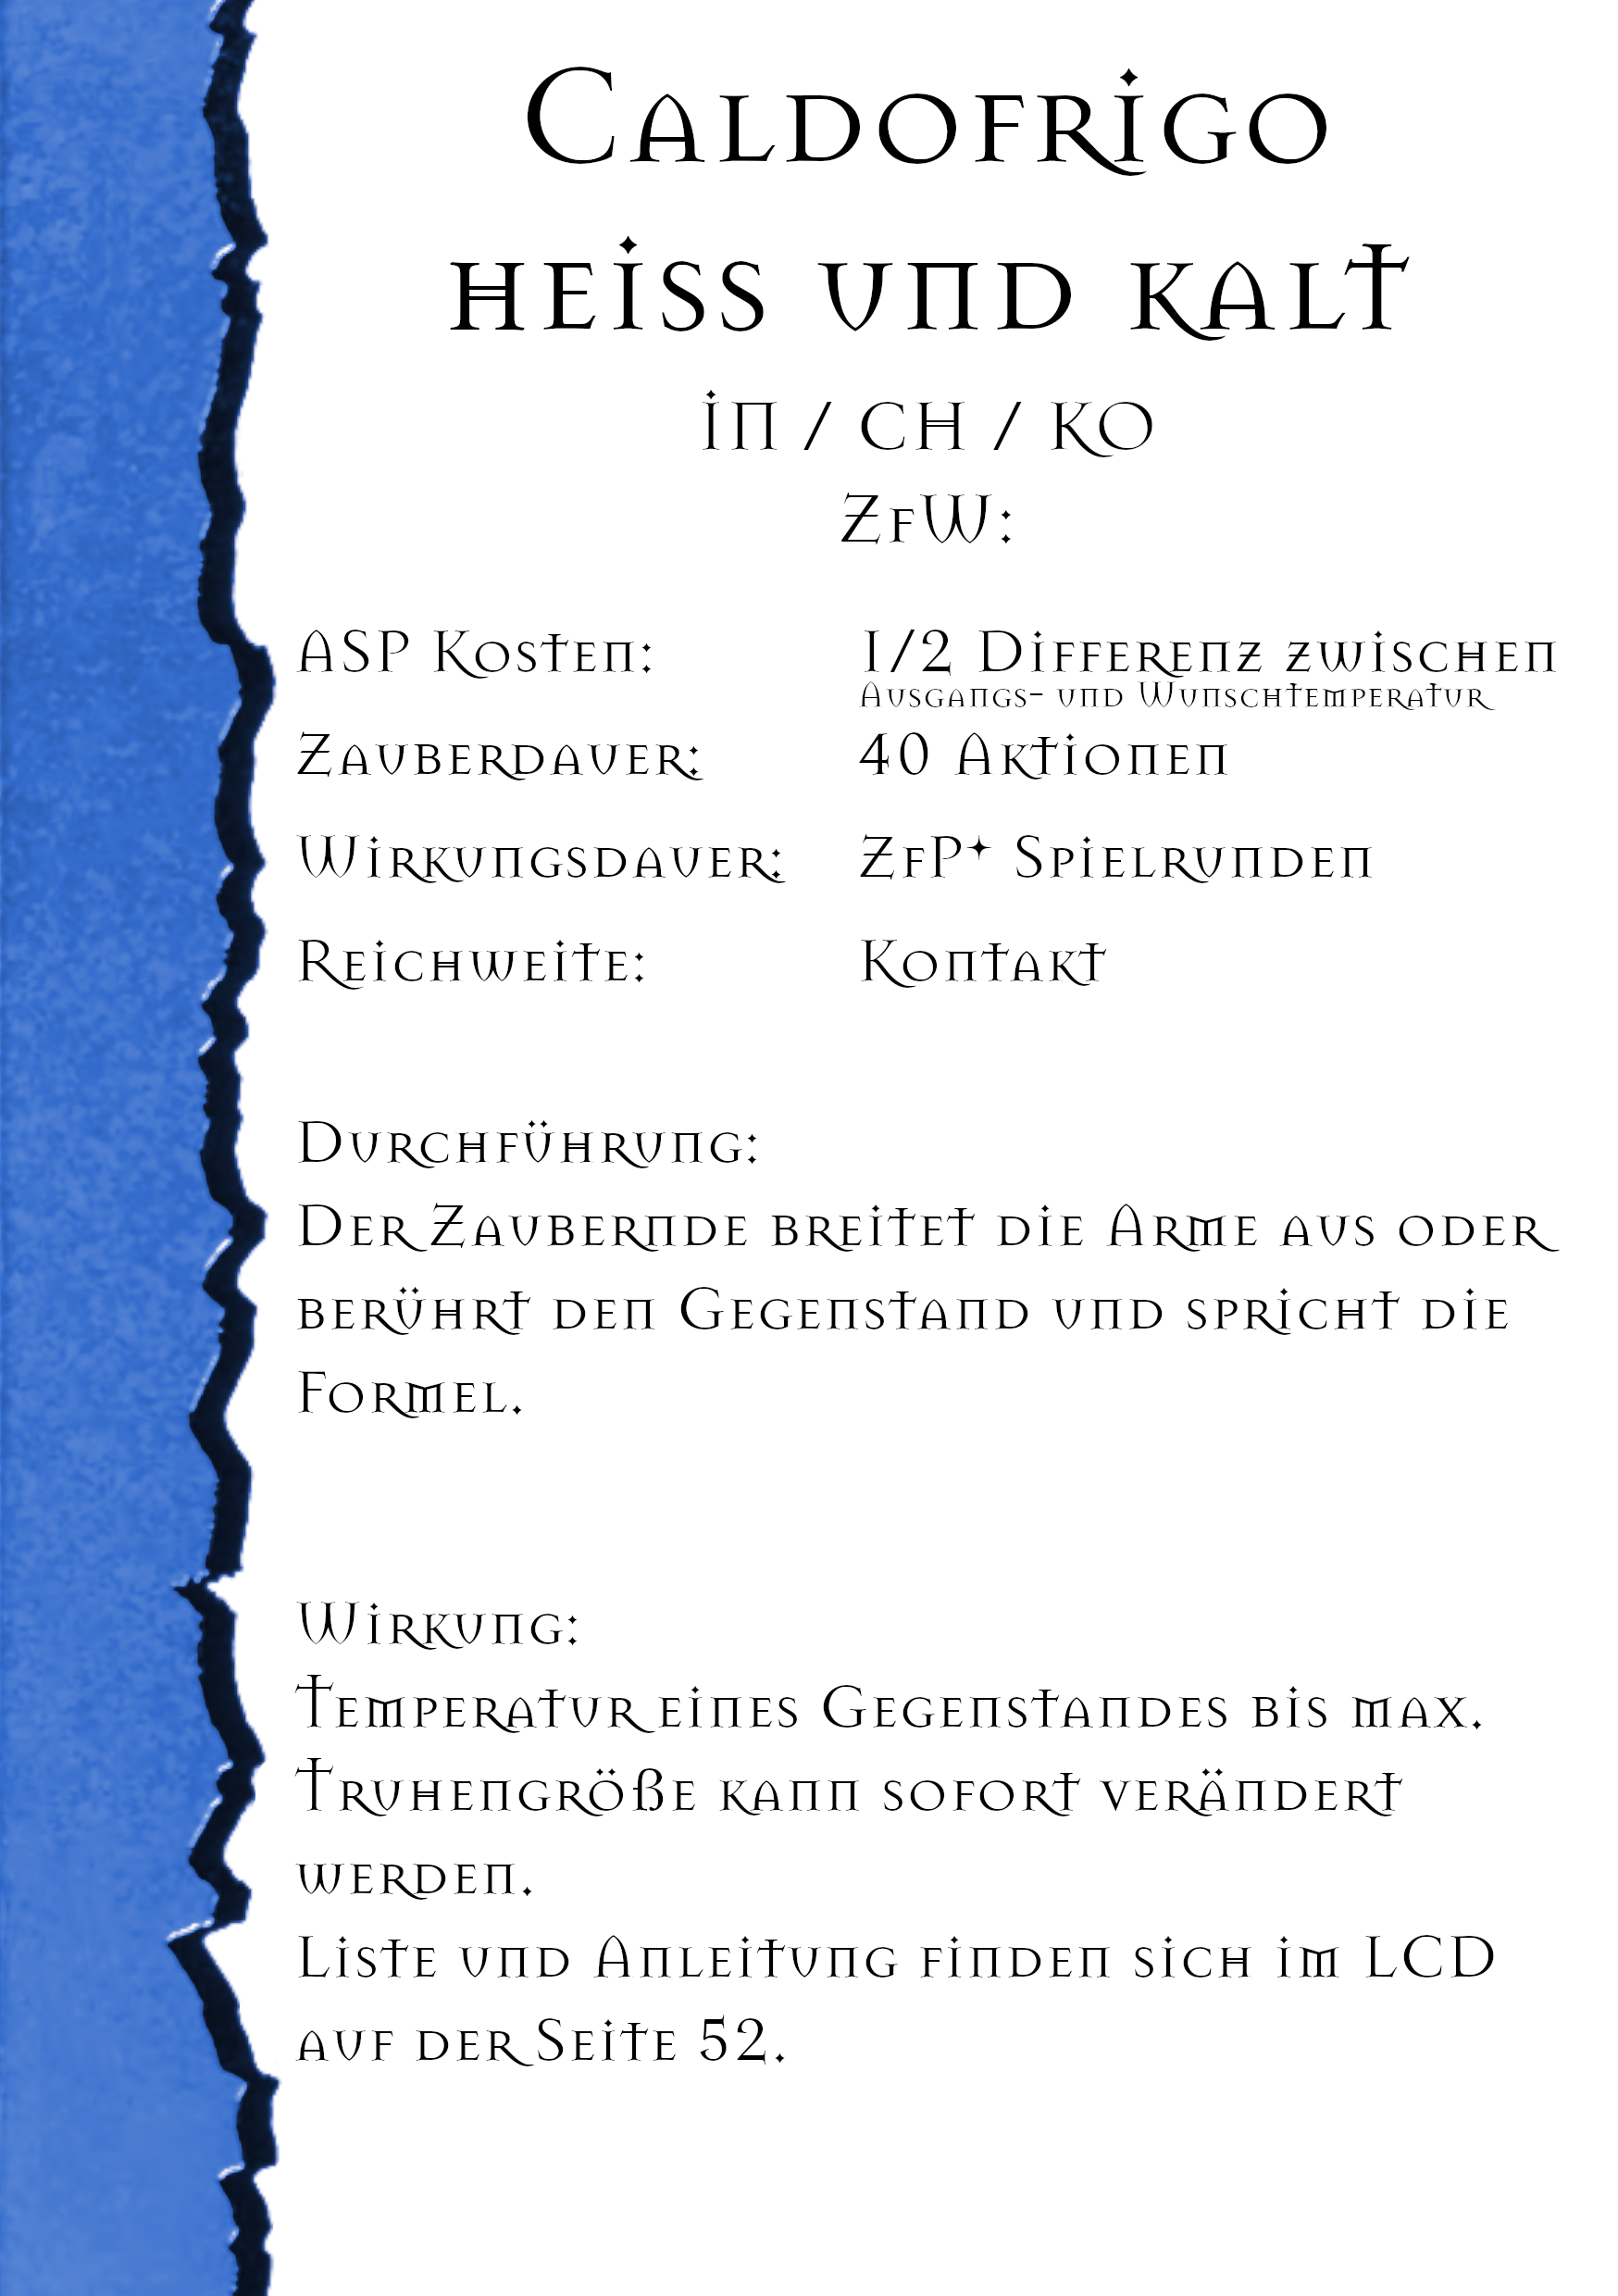 782-caldofrigo-heiss-und-kalt-16601569327634.png